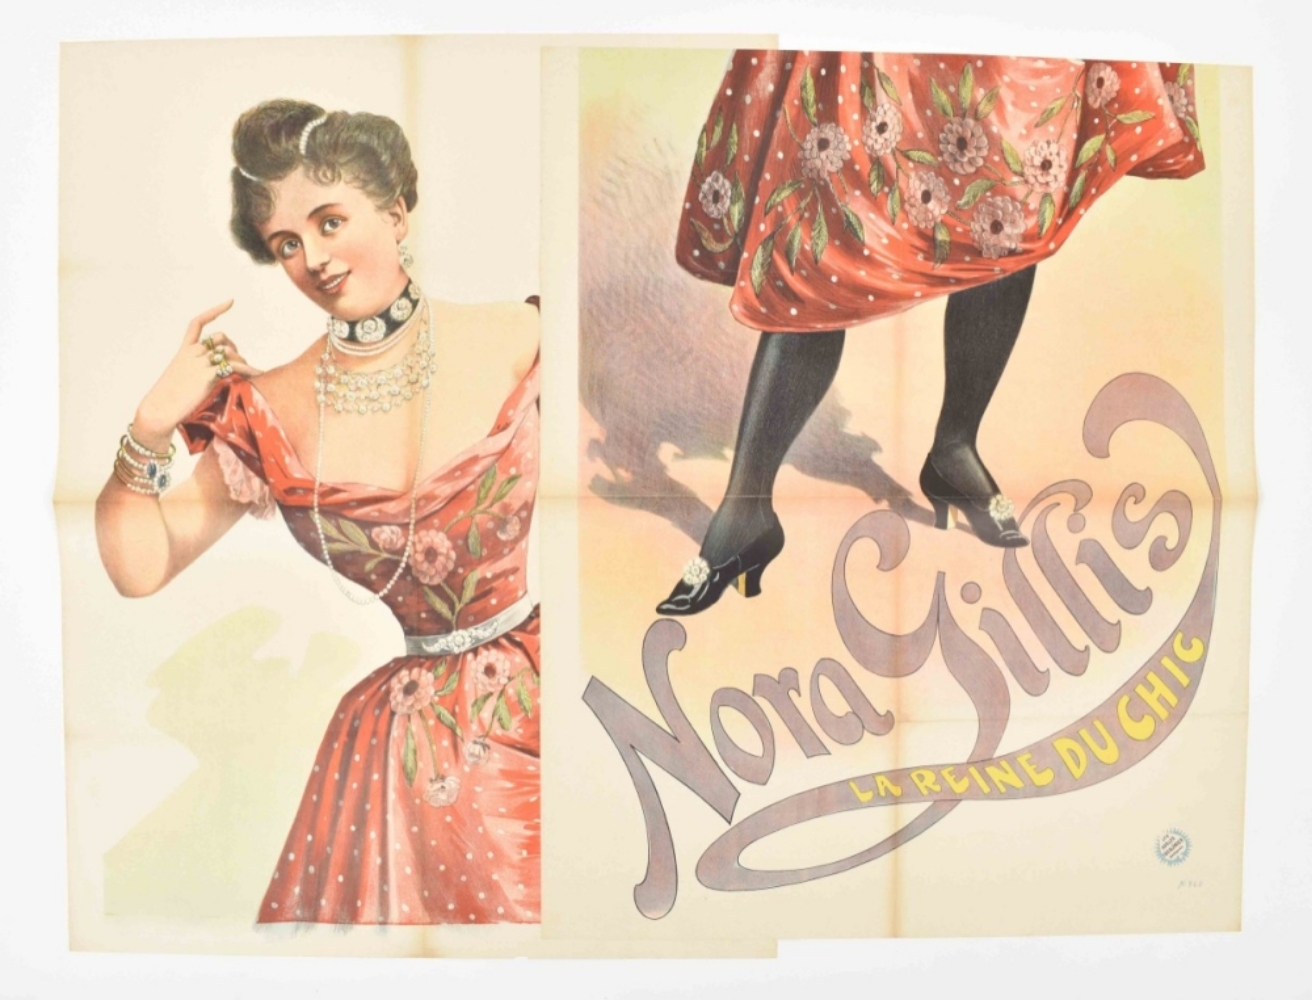 [Entertainment] Nora Gillis. La reine du chic Friedländer, Hamburg, 1891 - Image 2 of 6